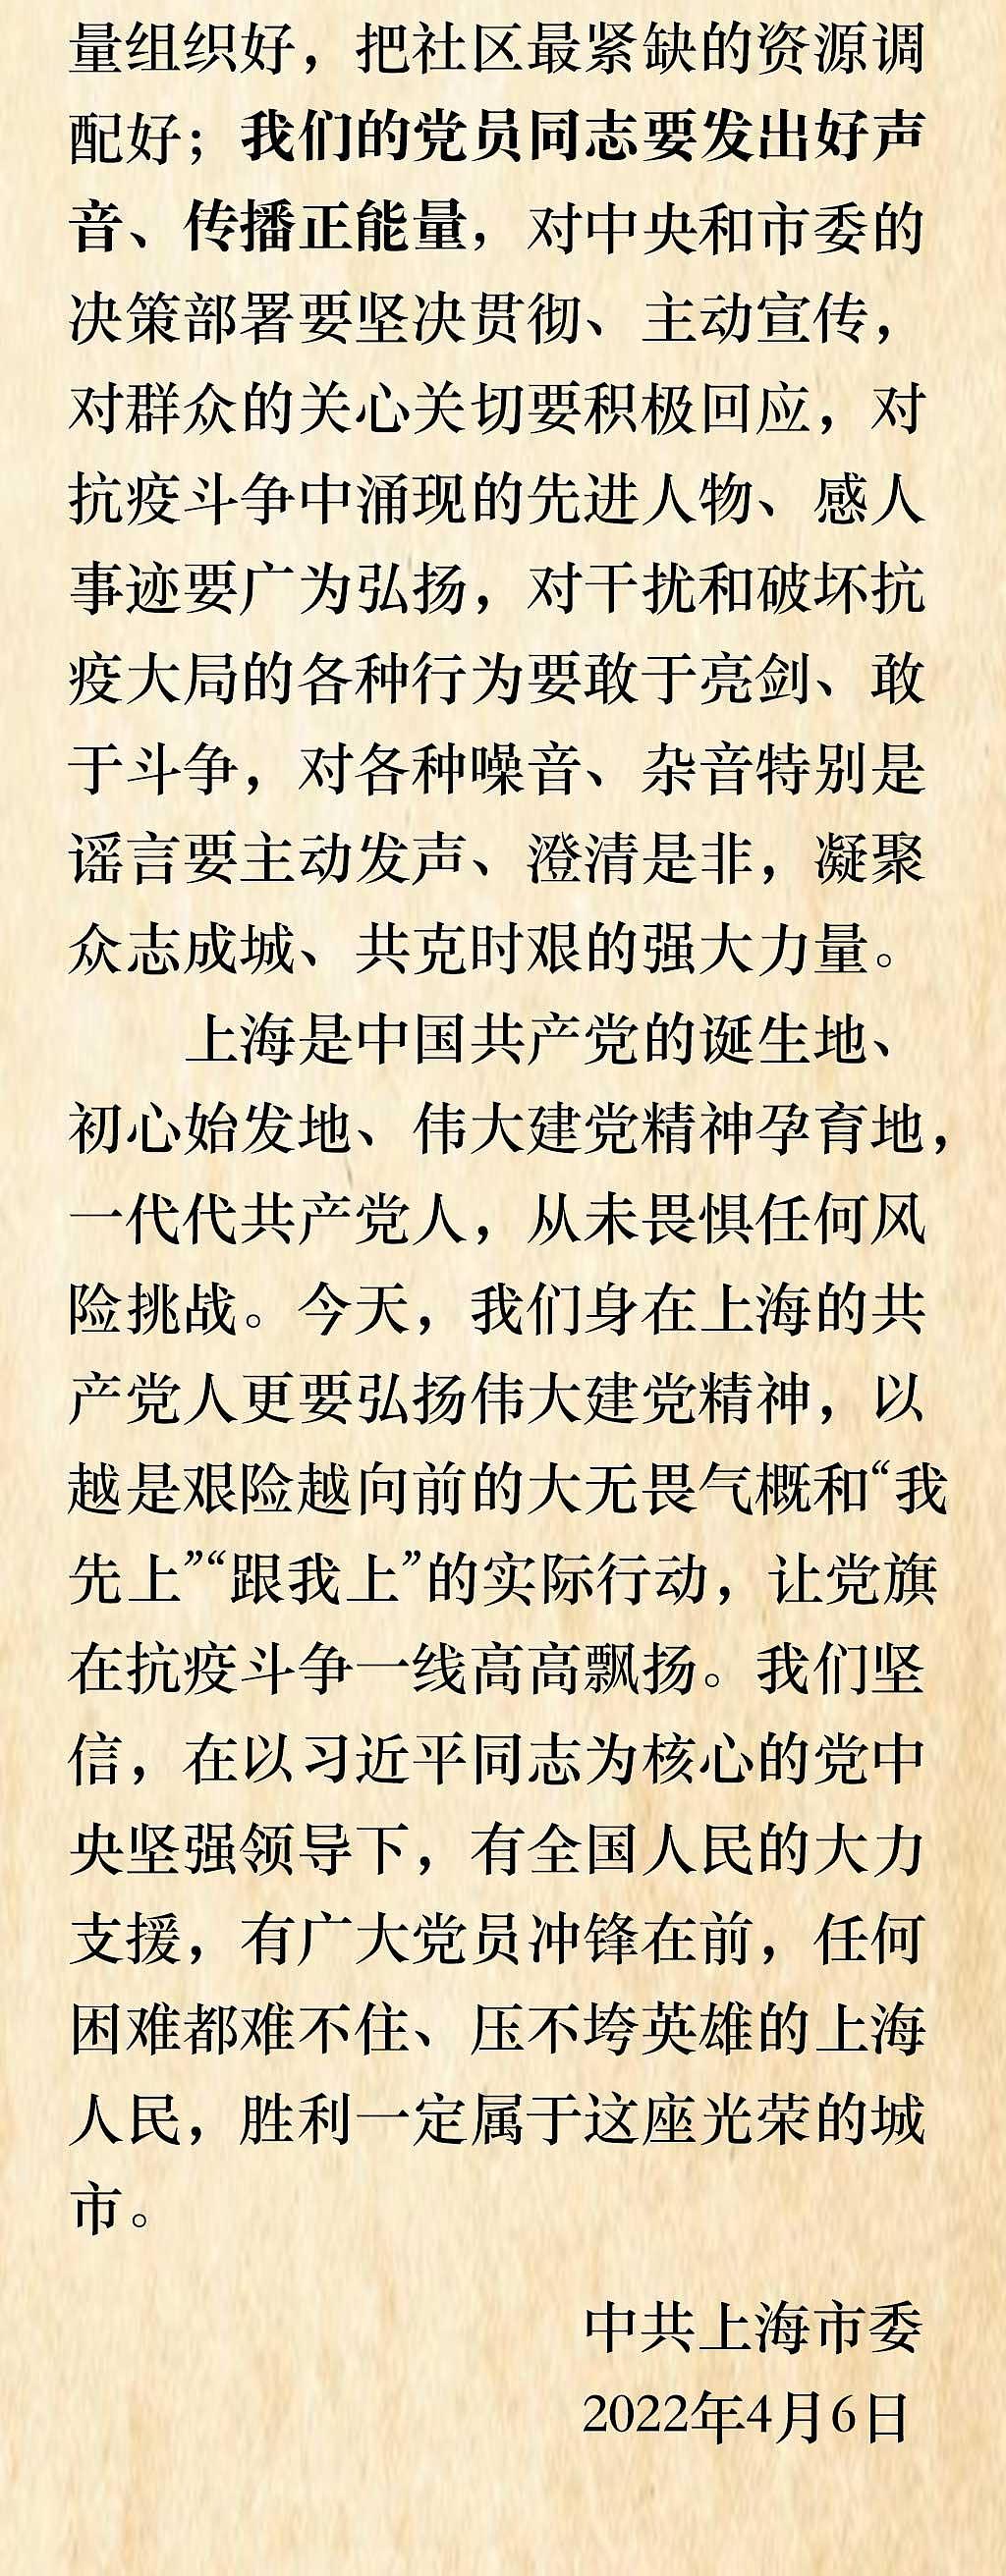 中共上海市委致全市共产党员的公开信 - 2